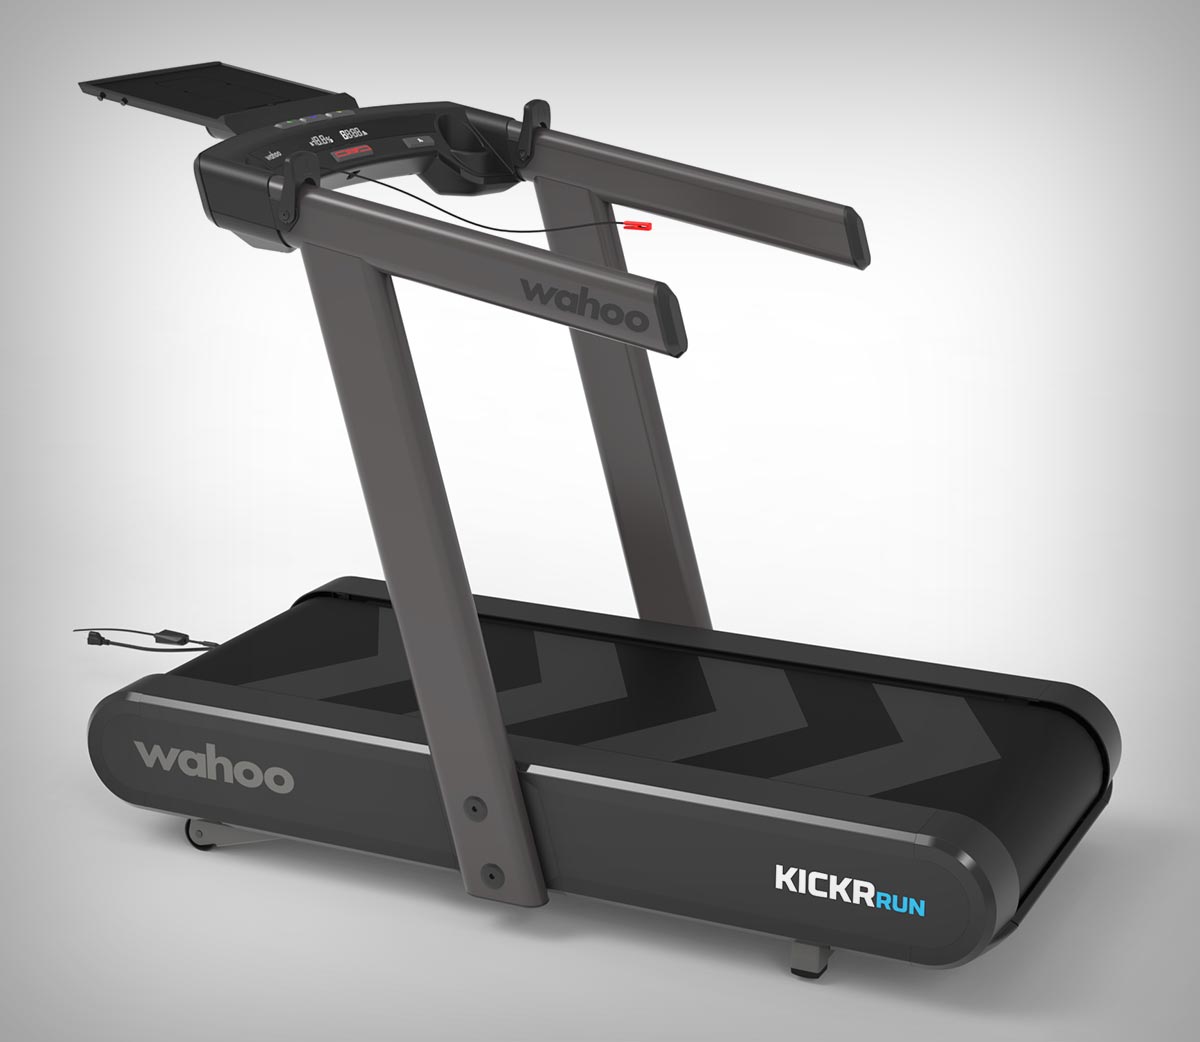 Wahoo anuncia la Kickr Run, una cinta de correr inteligente con modo RunFree capaz de ajustar la velocidad de forma automática